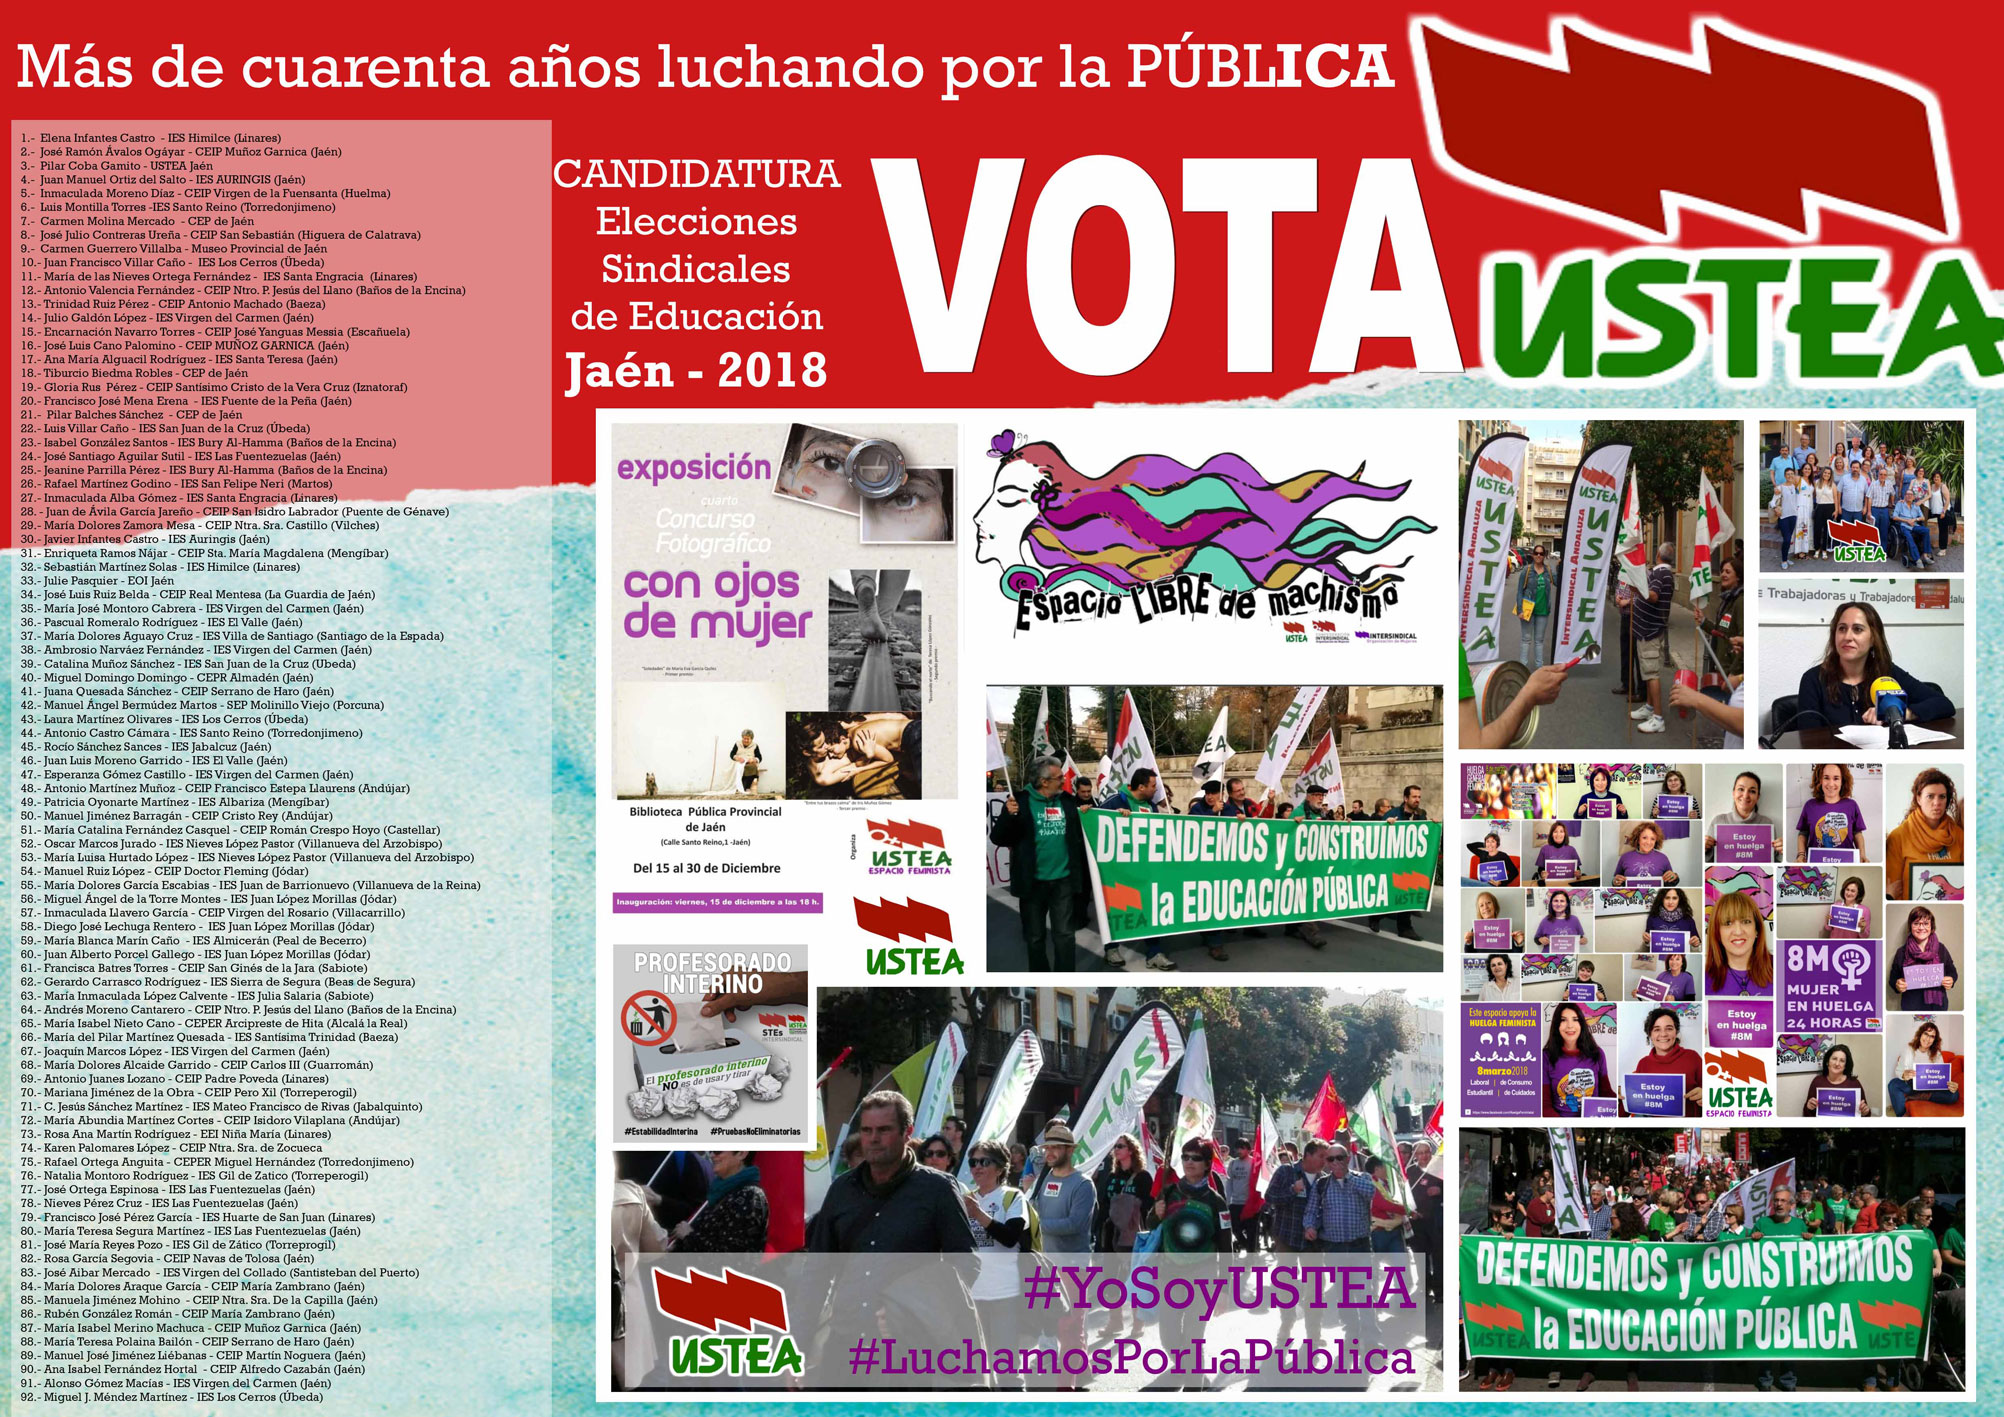 Elecciones sindicales2018 a quién votar Ustea jaén